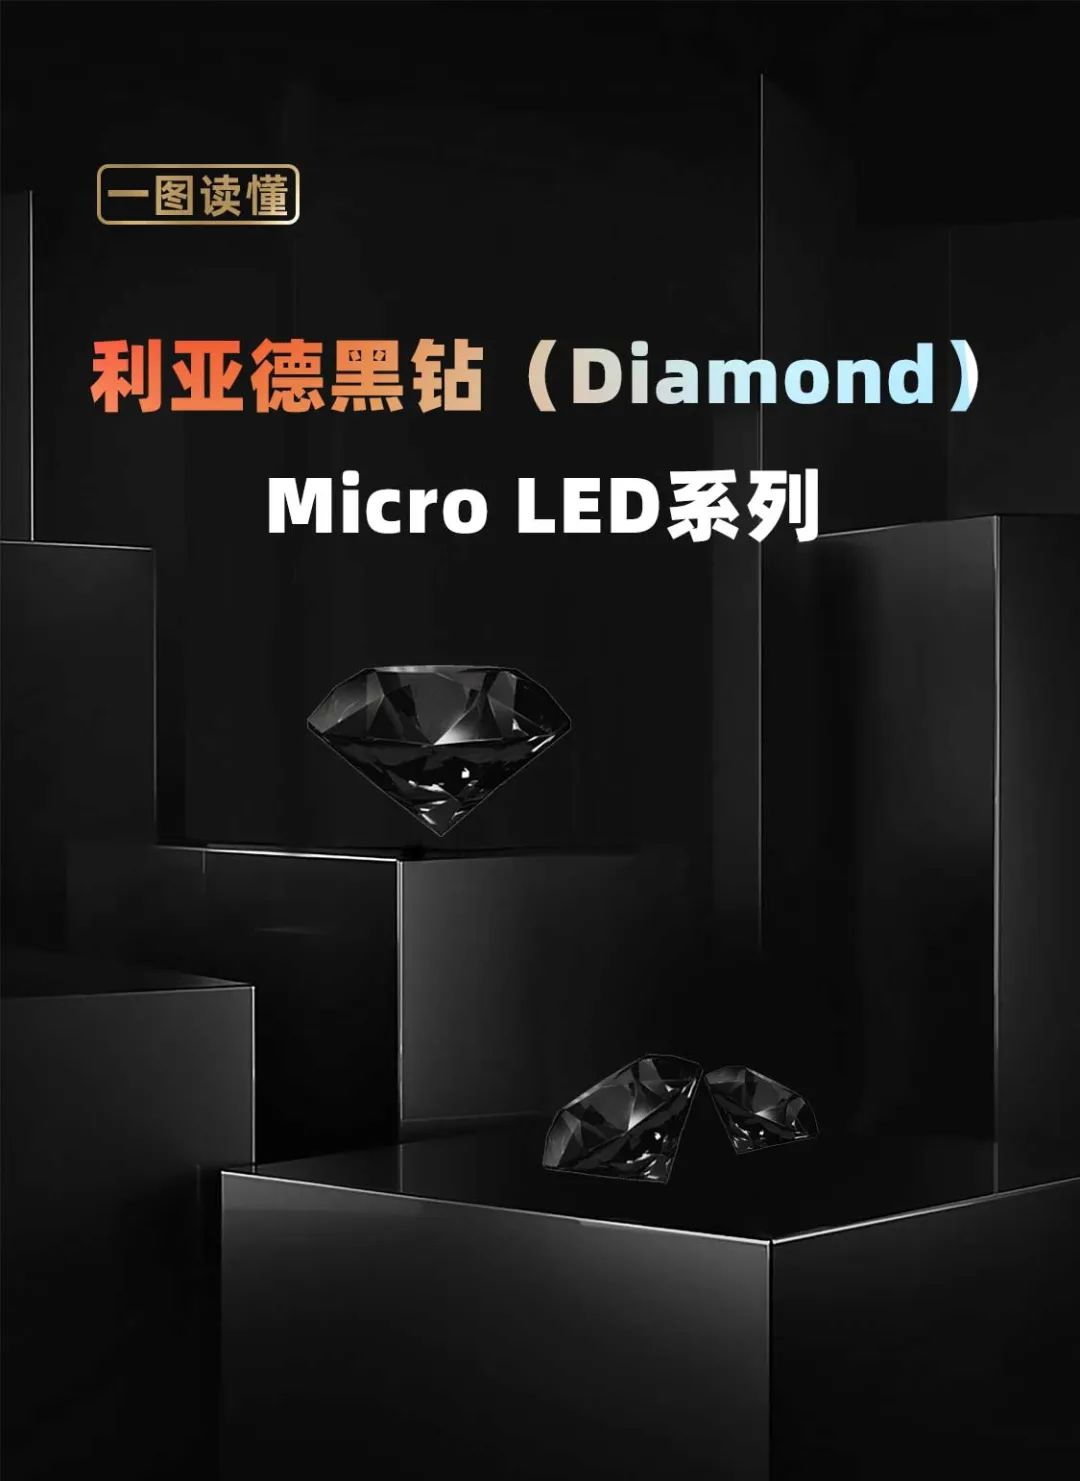 sunbet面向全球发布第二代Micro LED显示技术——sunbet黑钻（Diamond）系列